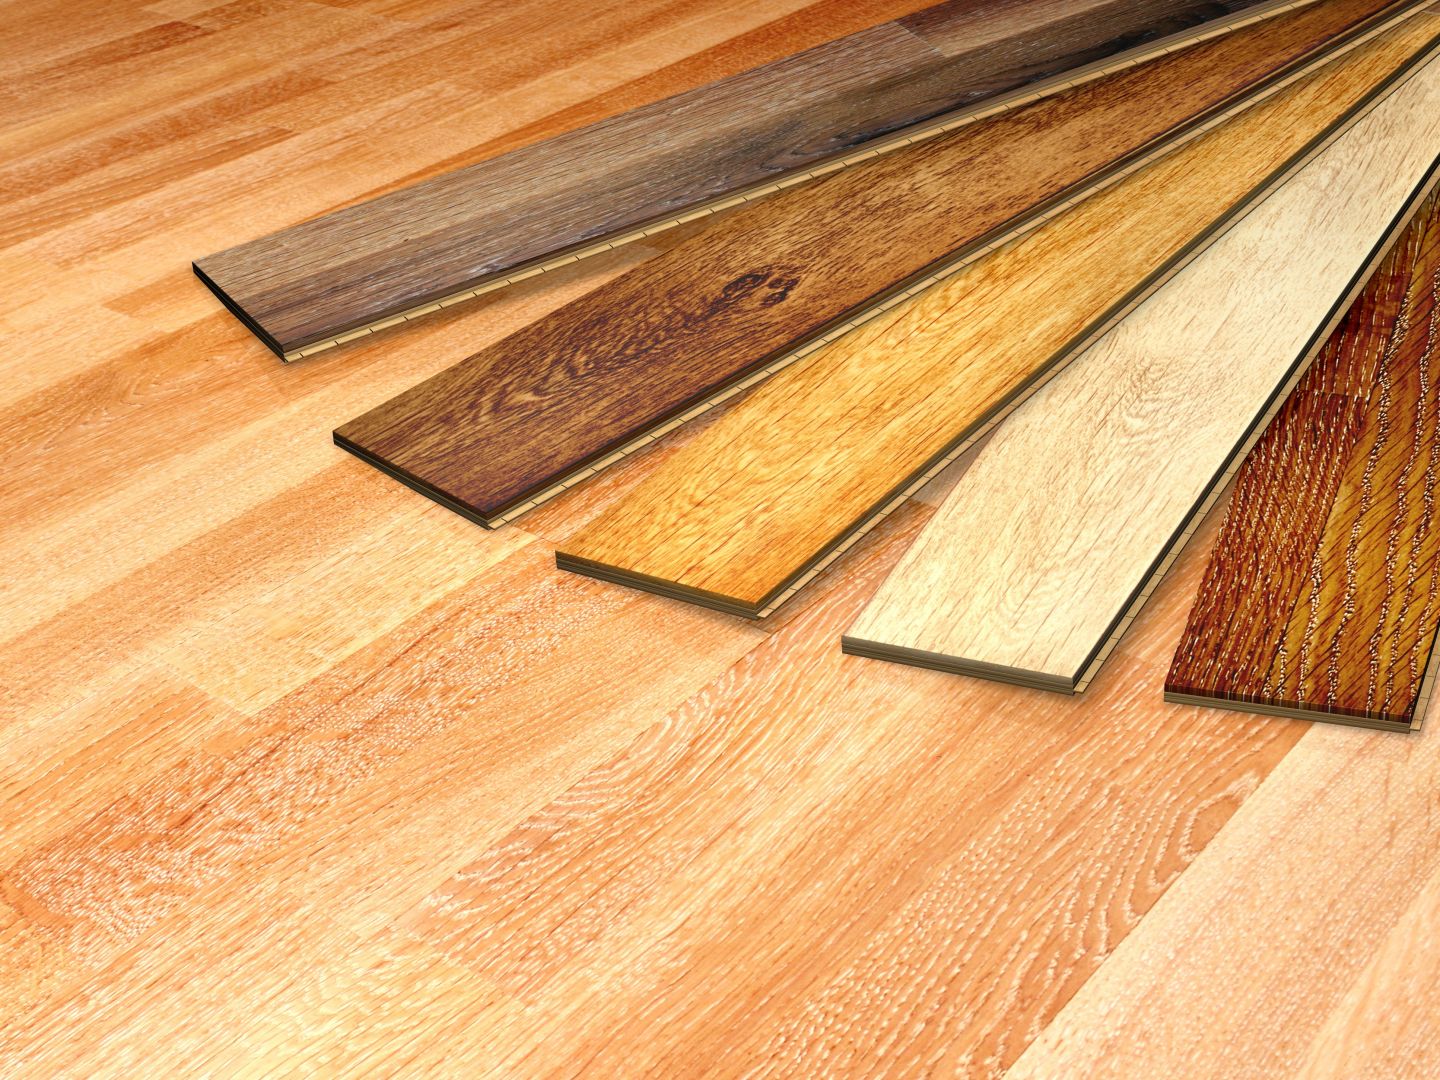 Vybroušení a nalakování dřevěné podlahy, cca 80 m2